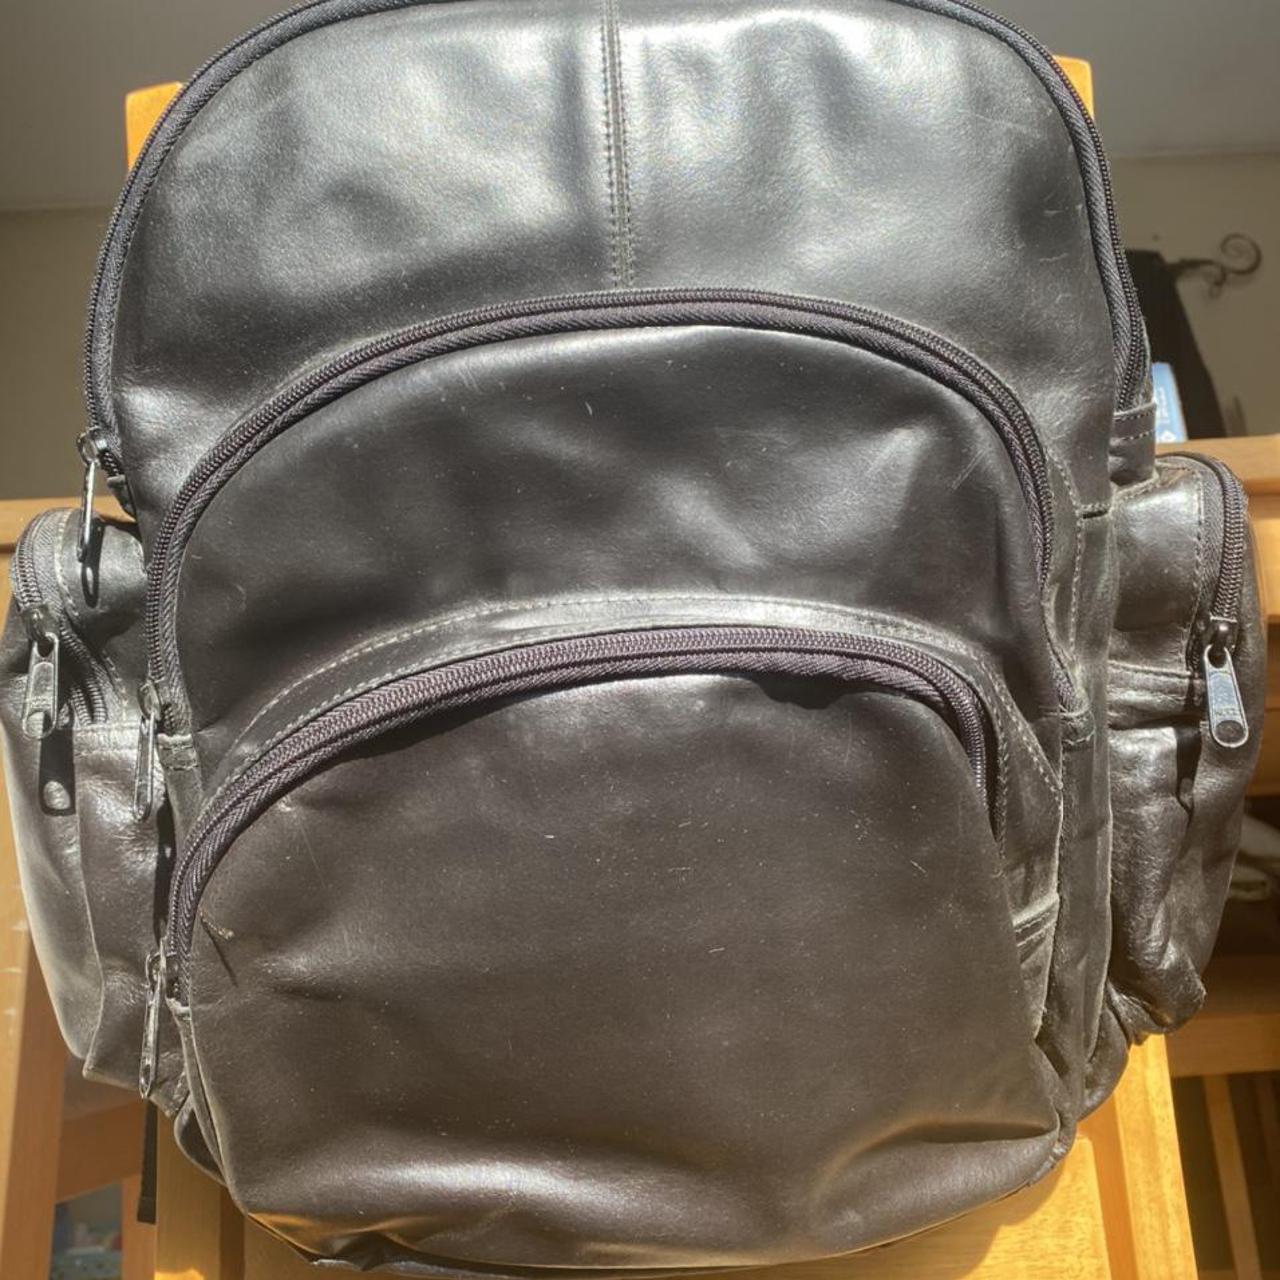 Wilson’s Leather Men's Bag | Depop